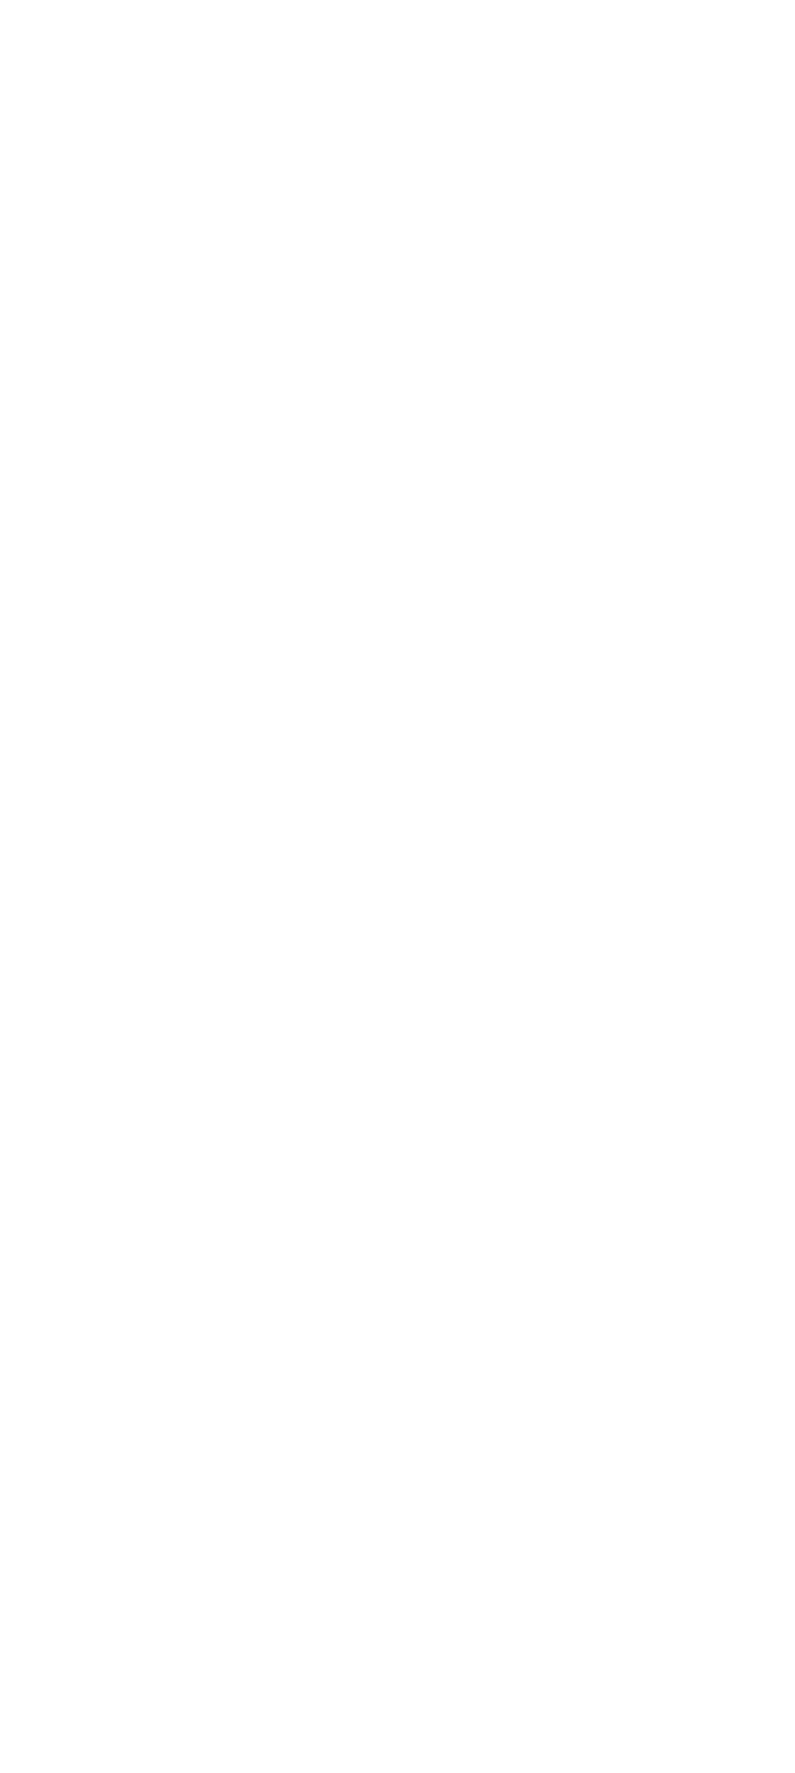 Akredytacje
W celu zapewnienia redakcjom prasowym/mediom dogodnych warunków do przygotowania materiałów z Festiwalu Frytka OFF ustalono następujące warunki i zasady udzielania akredytacji:
- termin zgłoszeń upływa 21 czerwca 2023 r. o godzinie 12.00
- zgłoszenia należy wysłać na adres sbielecka@czestochowa.um.gov.pl
- zgłoszenie powinno zawierać imię i nazwisko dziennikarza/fotoreportera/operatora oraz nazwę i adres redakcji.
Regulamin akredytacji dziennikarskich:
- Akredytacja umożliwia przebywanie na terenie, na którym odbywają się darmowe i ogólnodostępne wydarzenia, w szczególności 24 czerwca, od godzi. 17.00 do 1.30 w wydzielonym obszarze przy scenie muzycznej.
- Akredytowany dziennikarz będzie miał możliwość kontaktu/ rozmowy z wykonawcami, którzy wyrażą na to zgodę i organizatorami Festiwalu w miejscy wskazanym przez organizatora. Chęć przeprowadzenia wywiadu należy wcześniej zgłosić pod ten sam adres mailowy.
- Rejestracja dźwięku i obrazu w wyznaczonym dla mediów miejscu przy scenie muzycznej może odbywać się przez pierwsze 10 min koncertu każdego z artystów. Po tym czasie dziennikarze/fotoreporterzy/operatorzy proszeni są o opuszczenie terenu pod sceną.
- Podczas koncertu dopuszczone jest rejestrowanie materiału o charakterze reporterskim o czasie do 3 minut.
- Zasady rejestracji dźwięku i obrazu akredytowanych dziennikarzy/fotoreporterów/operatorów określają także poszczególne agencje artystów.
- Akredytacje należy odebrać w dniu Festiwalu w press-roomie, który będzie się znajdował przy wjeździe na teren festiwalowy(namiot przy parkingu od ul. Kordeckiego) od 16.00-18.00.
- organizator przy wydaniu akredytacji poprosi o okazanie dokumentu tożsamości ze zdjęciem.  